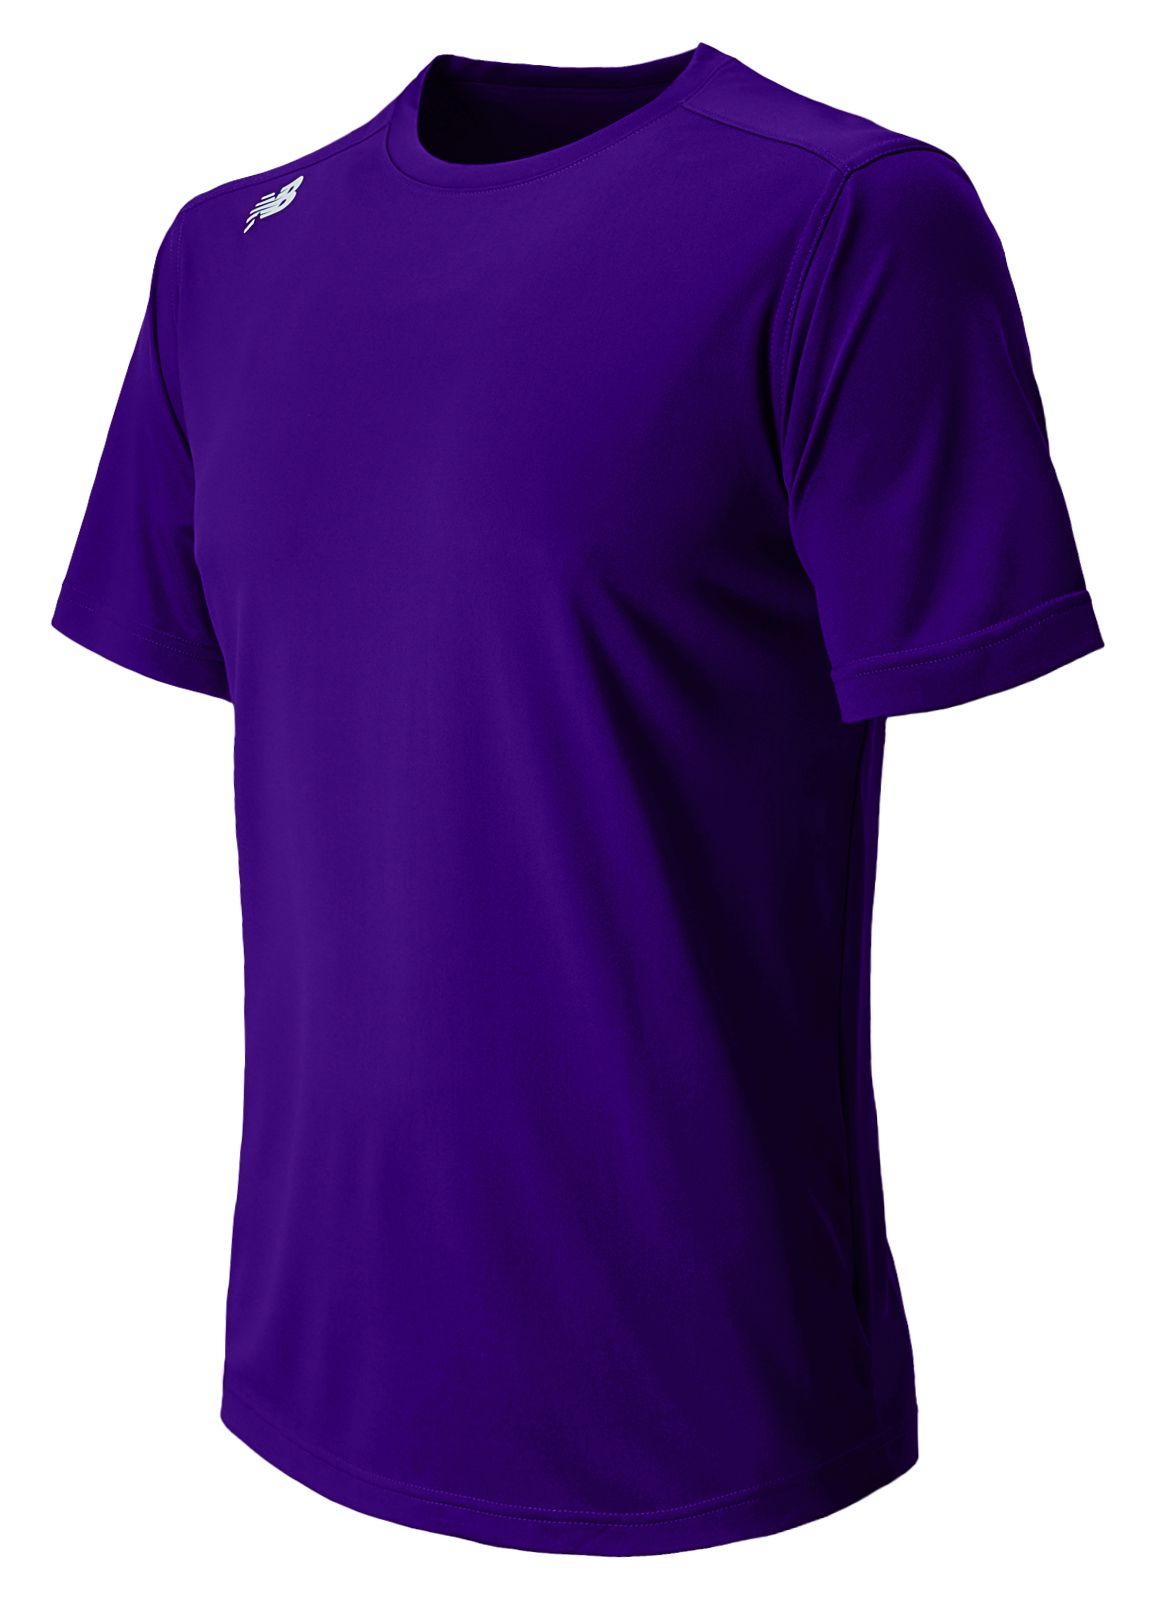 Team Purpleproduct image